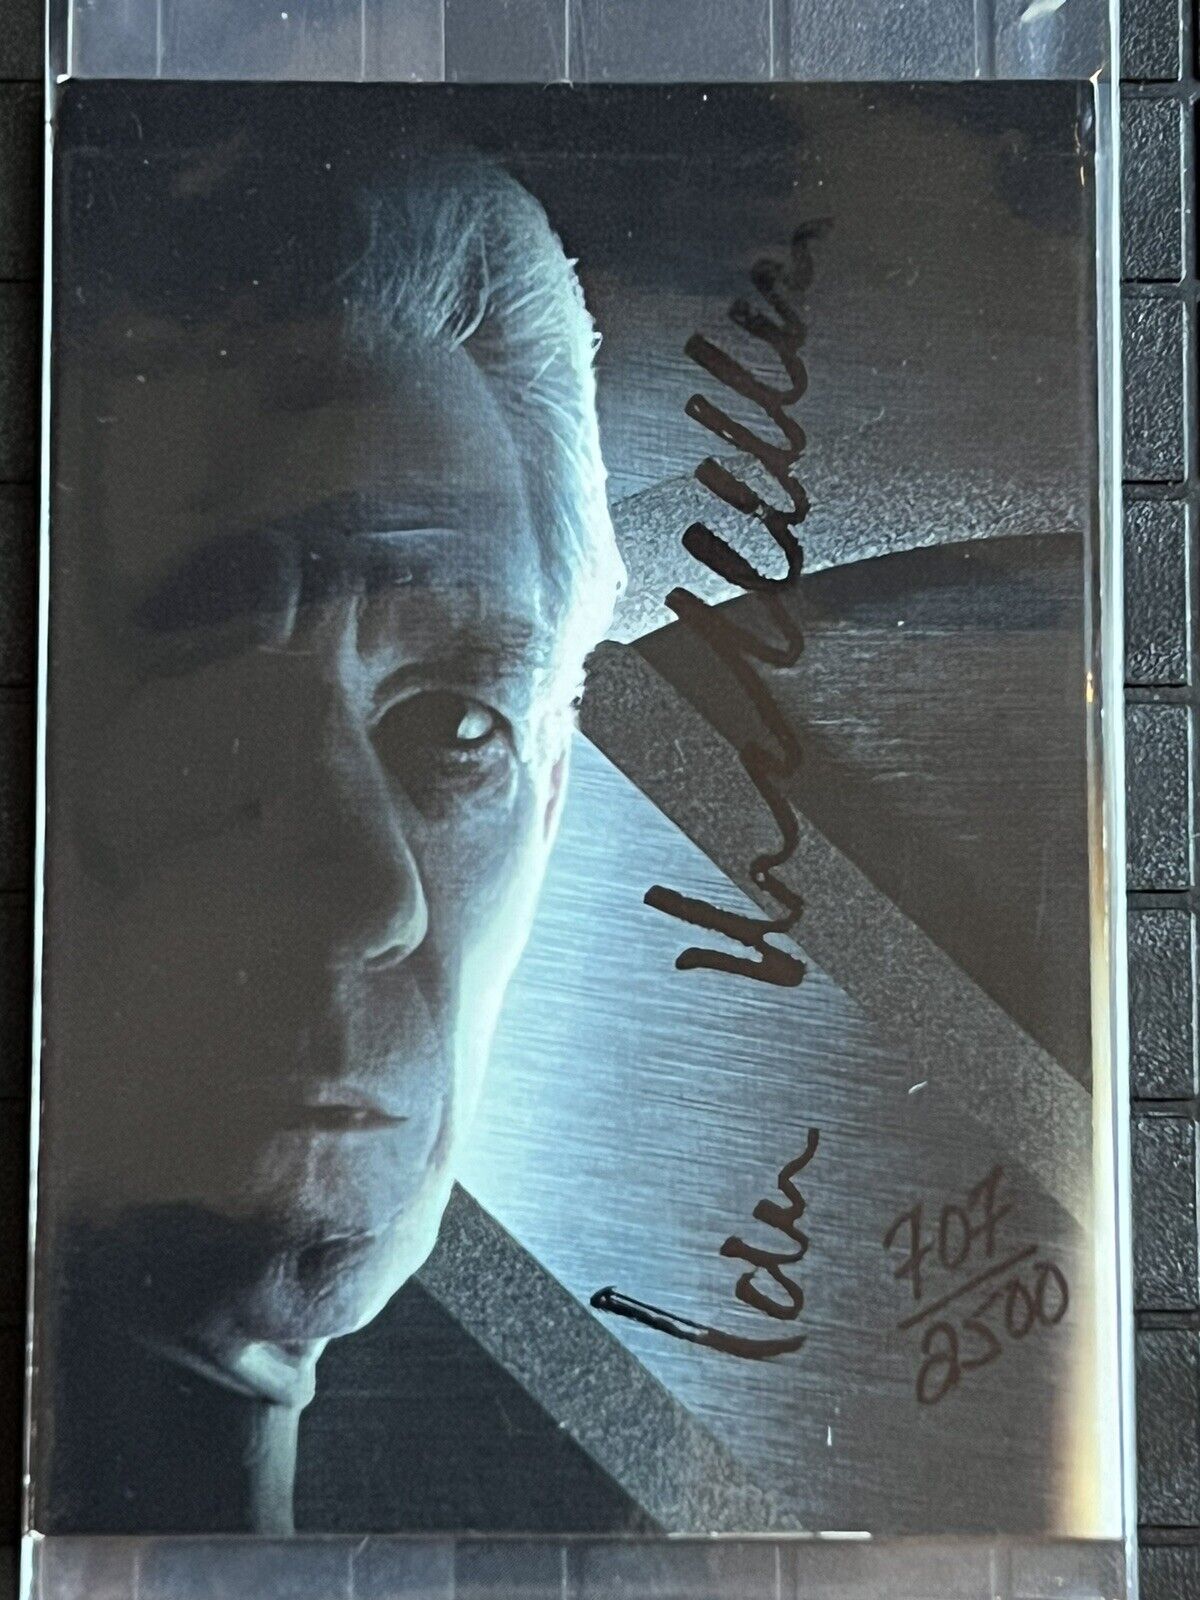 Ian McKellen Signed Autograph Card Topps - X-Men - Not JSA, PSA, BAS LOTR